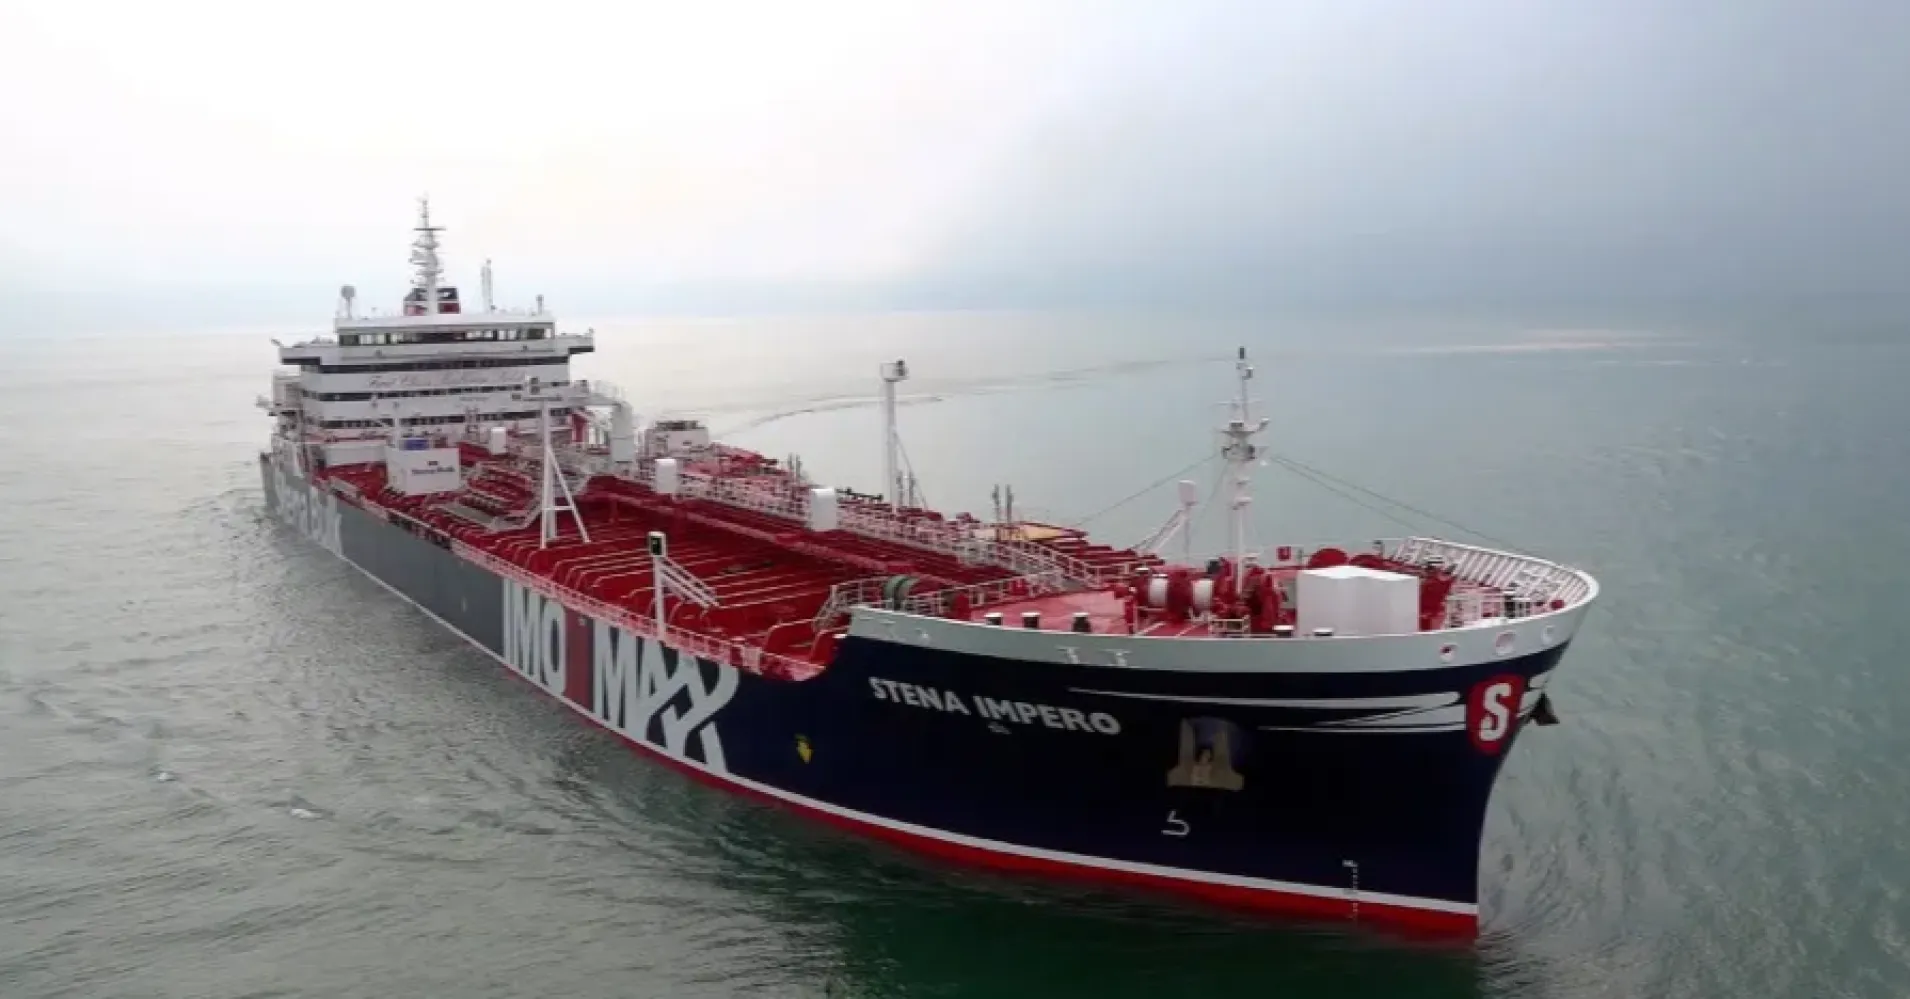 L’Iran sta cercando di dirottare illegalmente una nave mercantile americana.  Gli Stati Uniti vogliono mettere dei marines su di loro